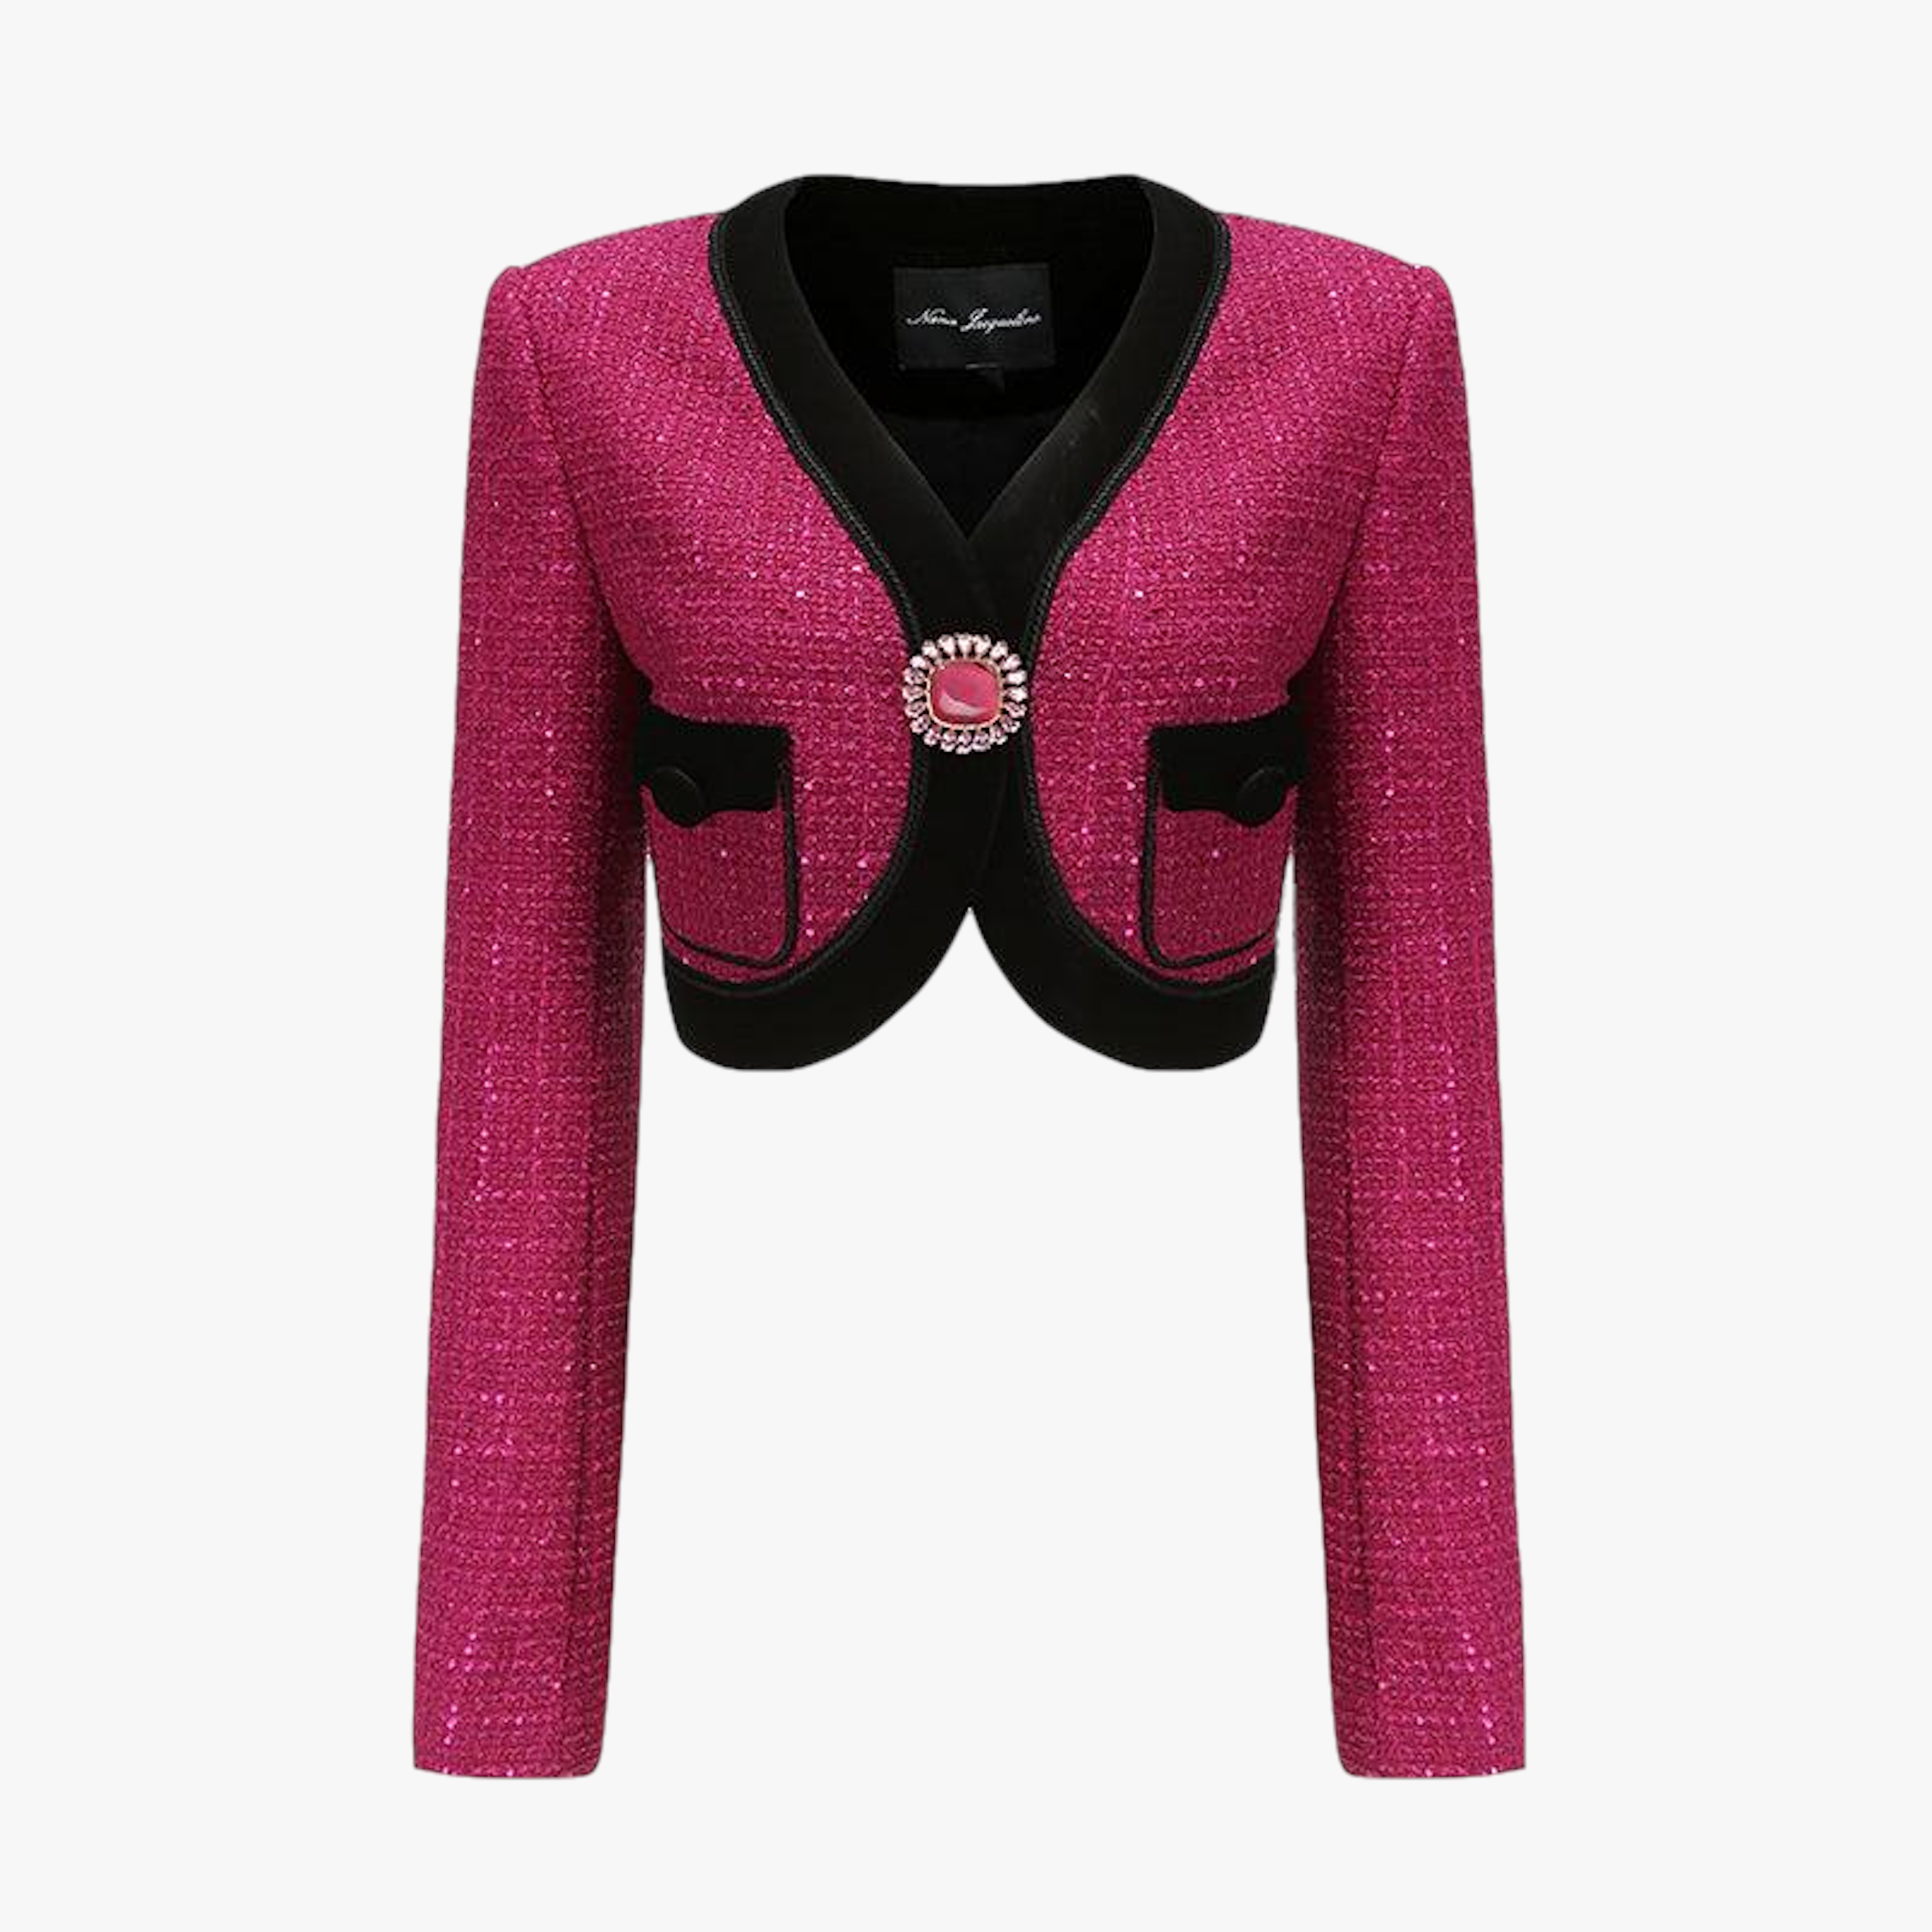 Pink Sequin Jackets Women, Channel Pink Jacket Women